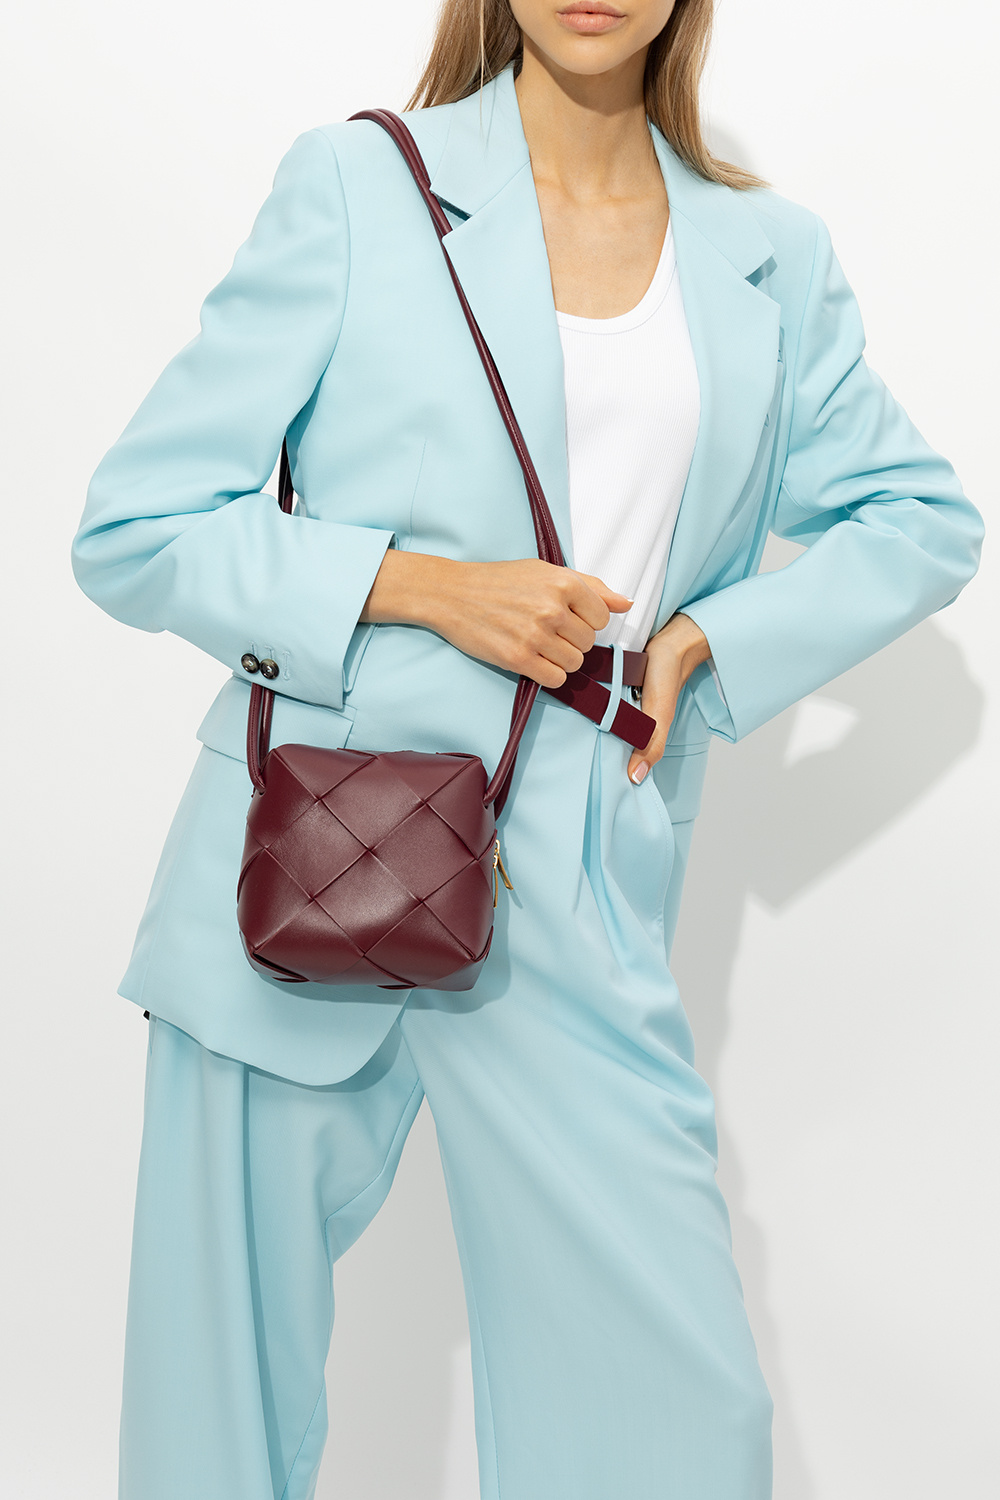 Bottega Veneta 'Cassette Mini' shoulder bag, Women's Bags